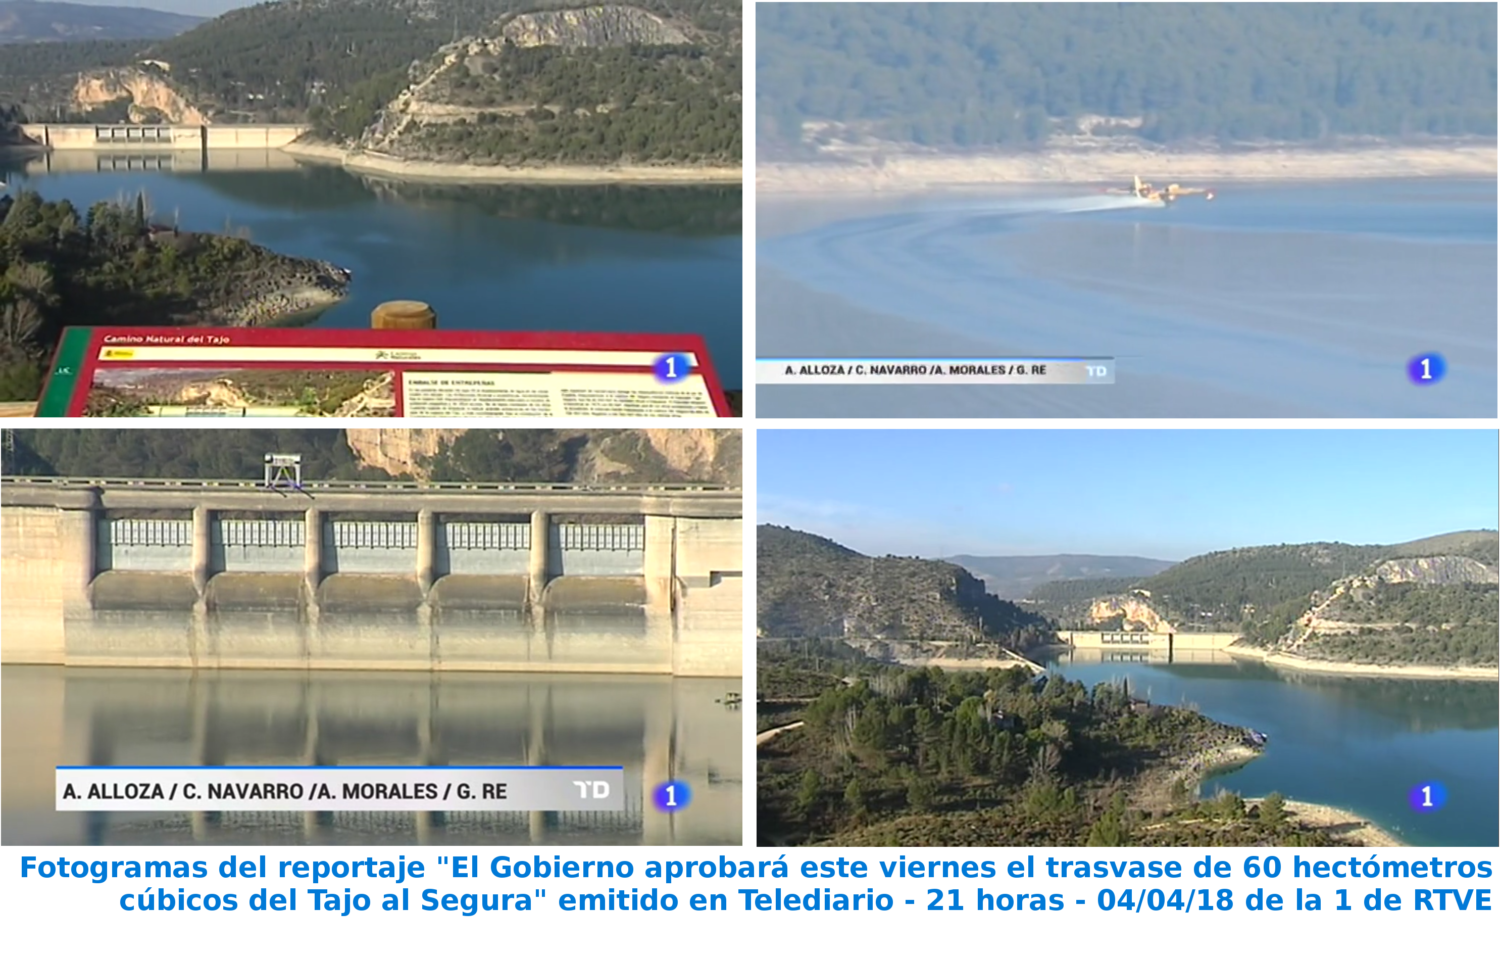 Fotogramas del reportaje "El Gobierno aprobará este viernes el trasvase de 60 hectómetros cúbicos del Tajo al Segura" emitido en Telediario - 21 horas - 04/04/18 de la 1 de RTVE